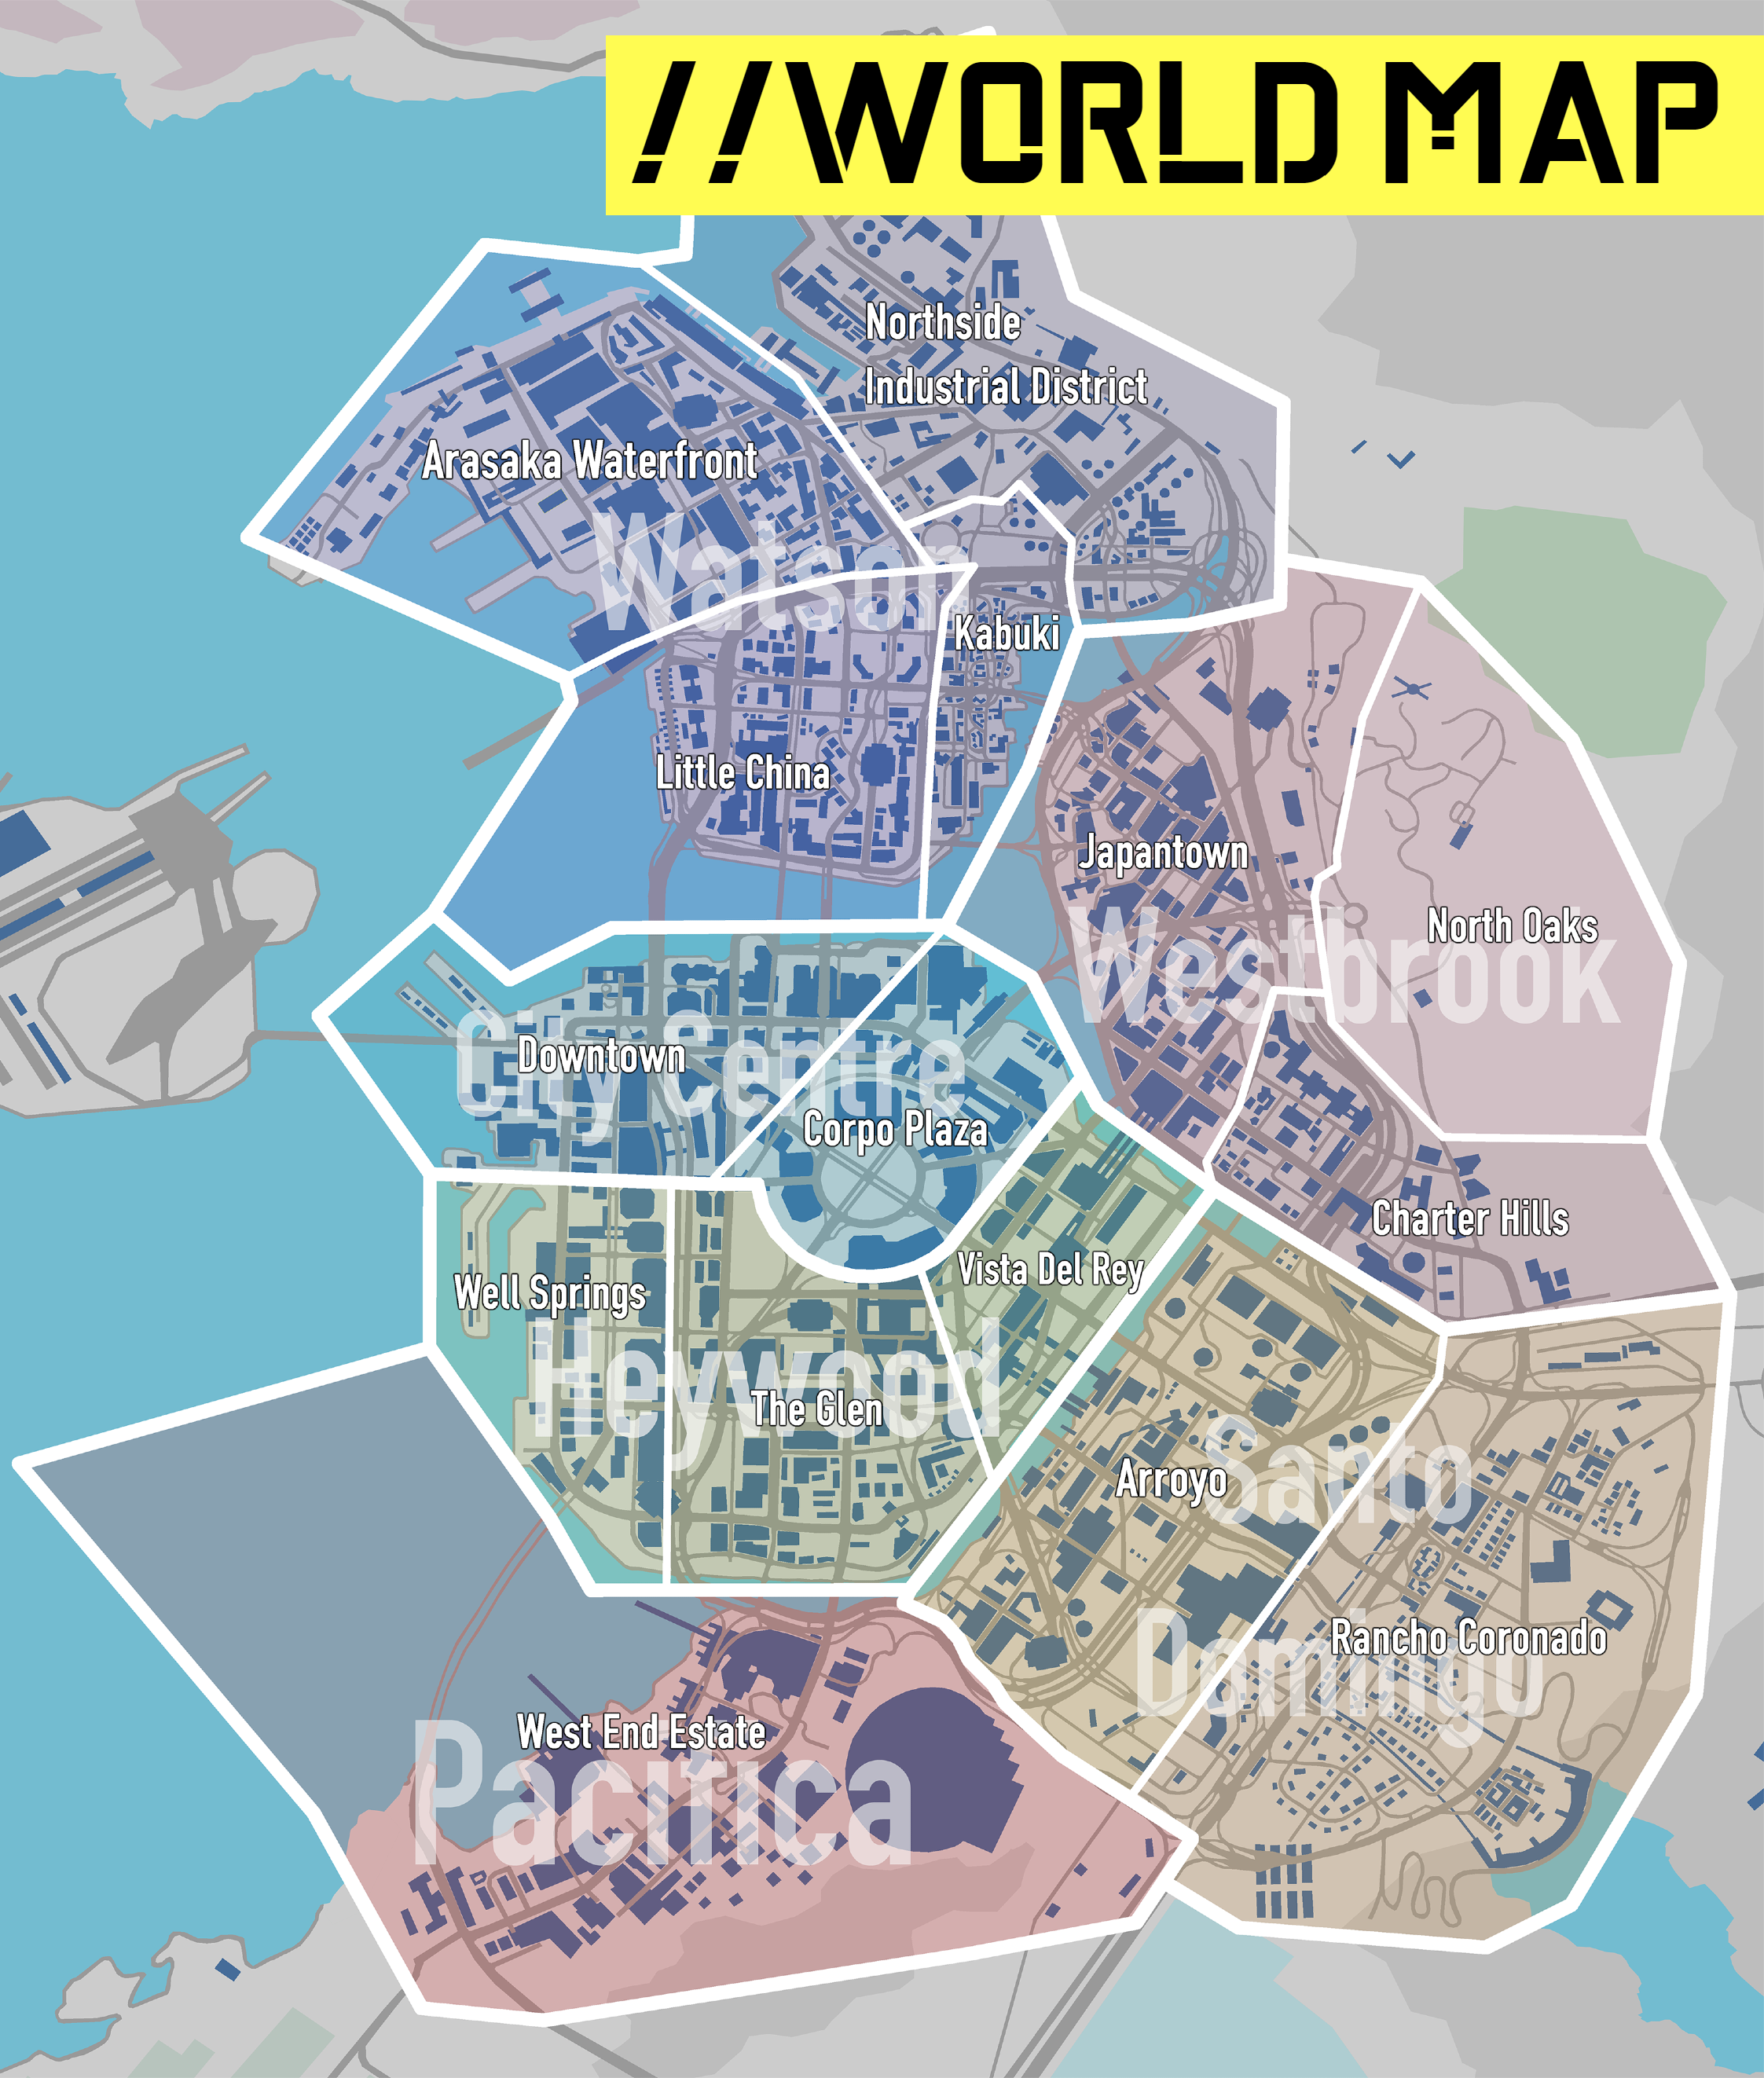 карта мира cyberpunk 2020 фото 89